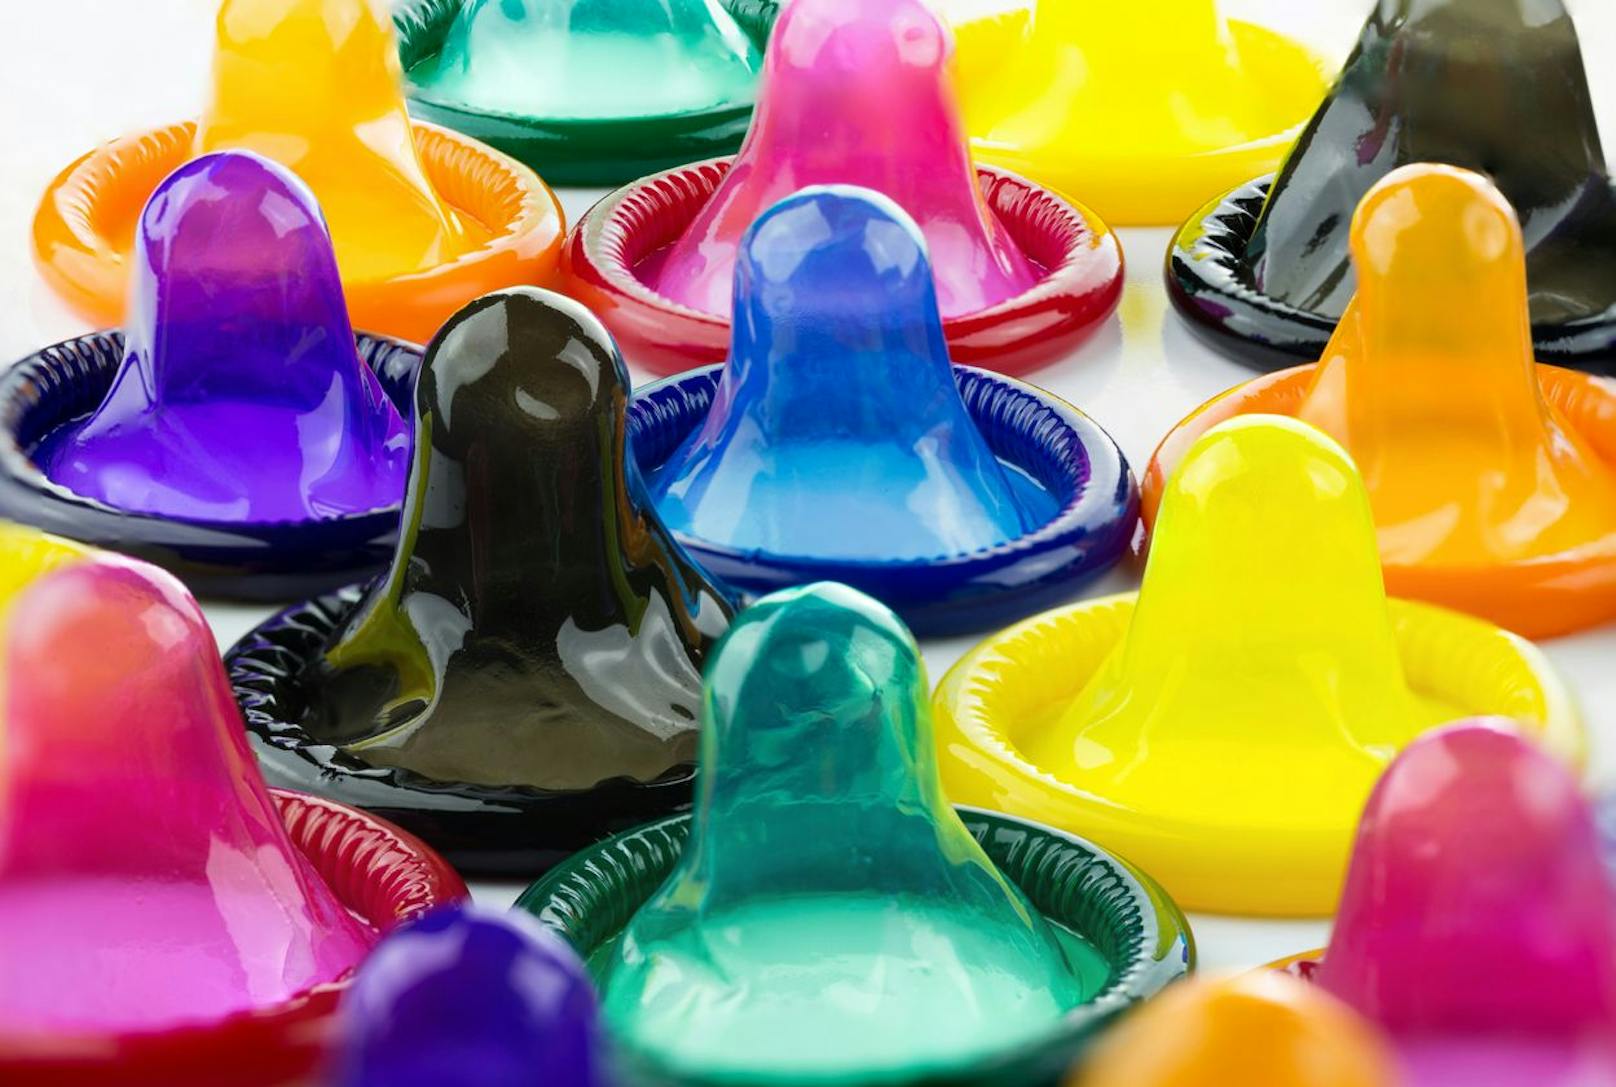 Das neue Kondom soll unter anderem Männern die Angst davor nehmen.